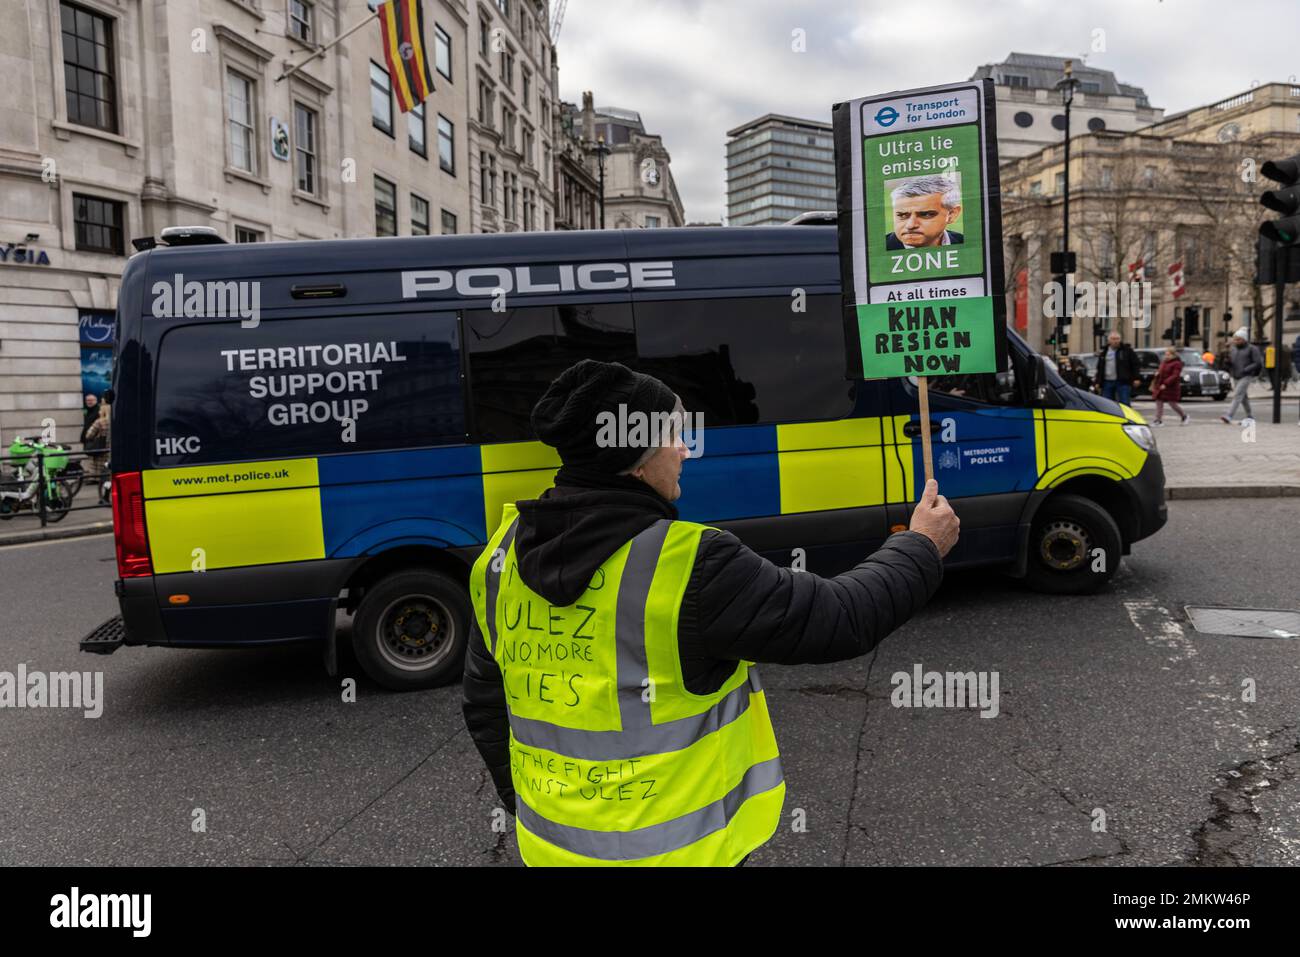 Des manifestants anti-Ulez à Trafalgar Square, Londres, protestent contre la mise en œuvre de la charge qui devrait toucher 160,00 voitures et 42,00 fourgonnettes par jour. Banque D'Images